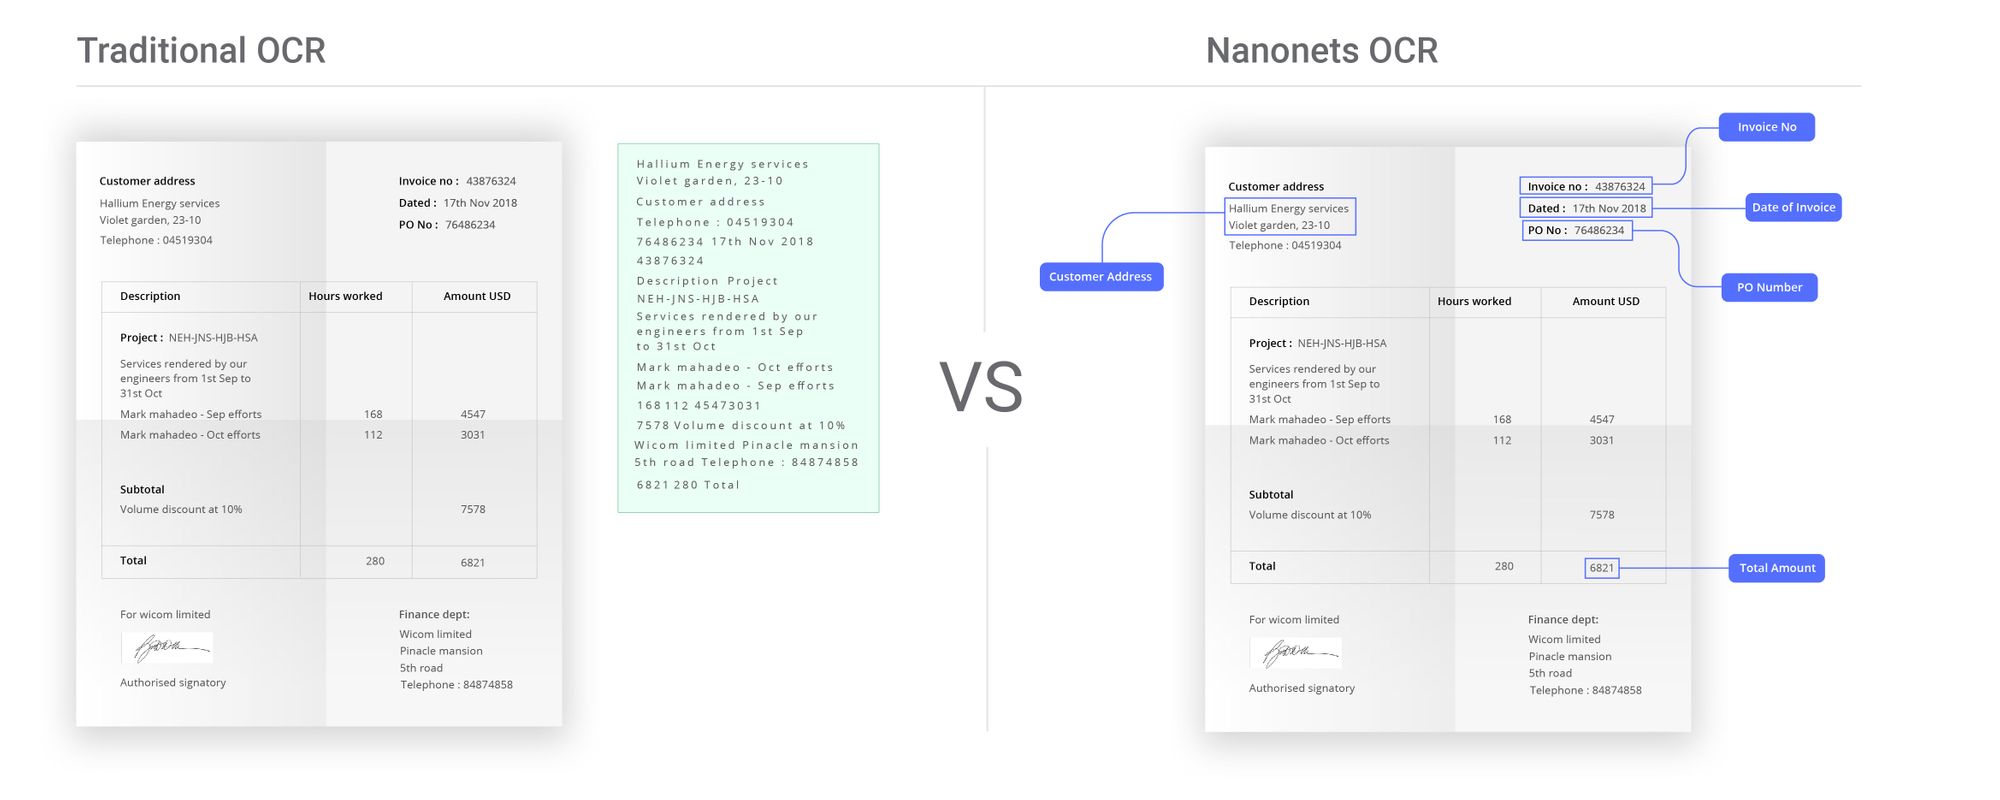 Traditional OCR versus Nanonets OCR